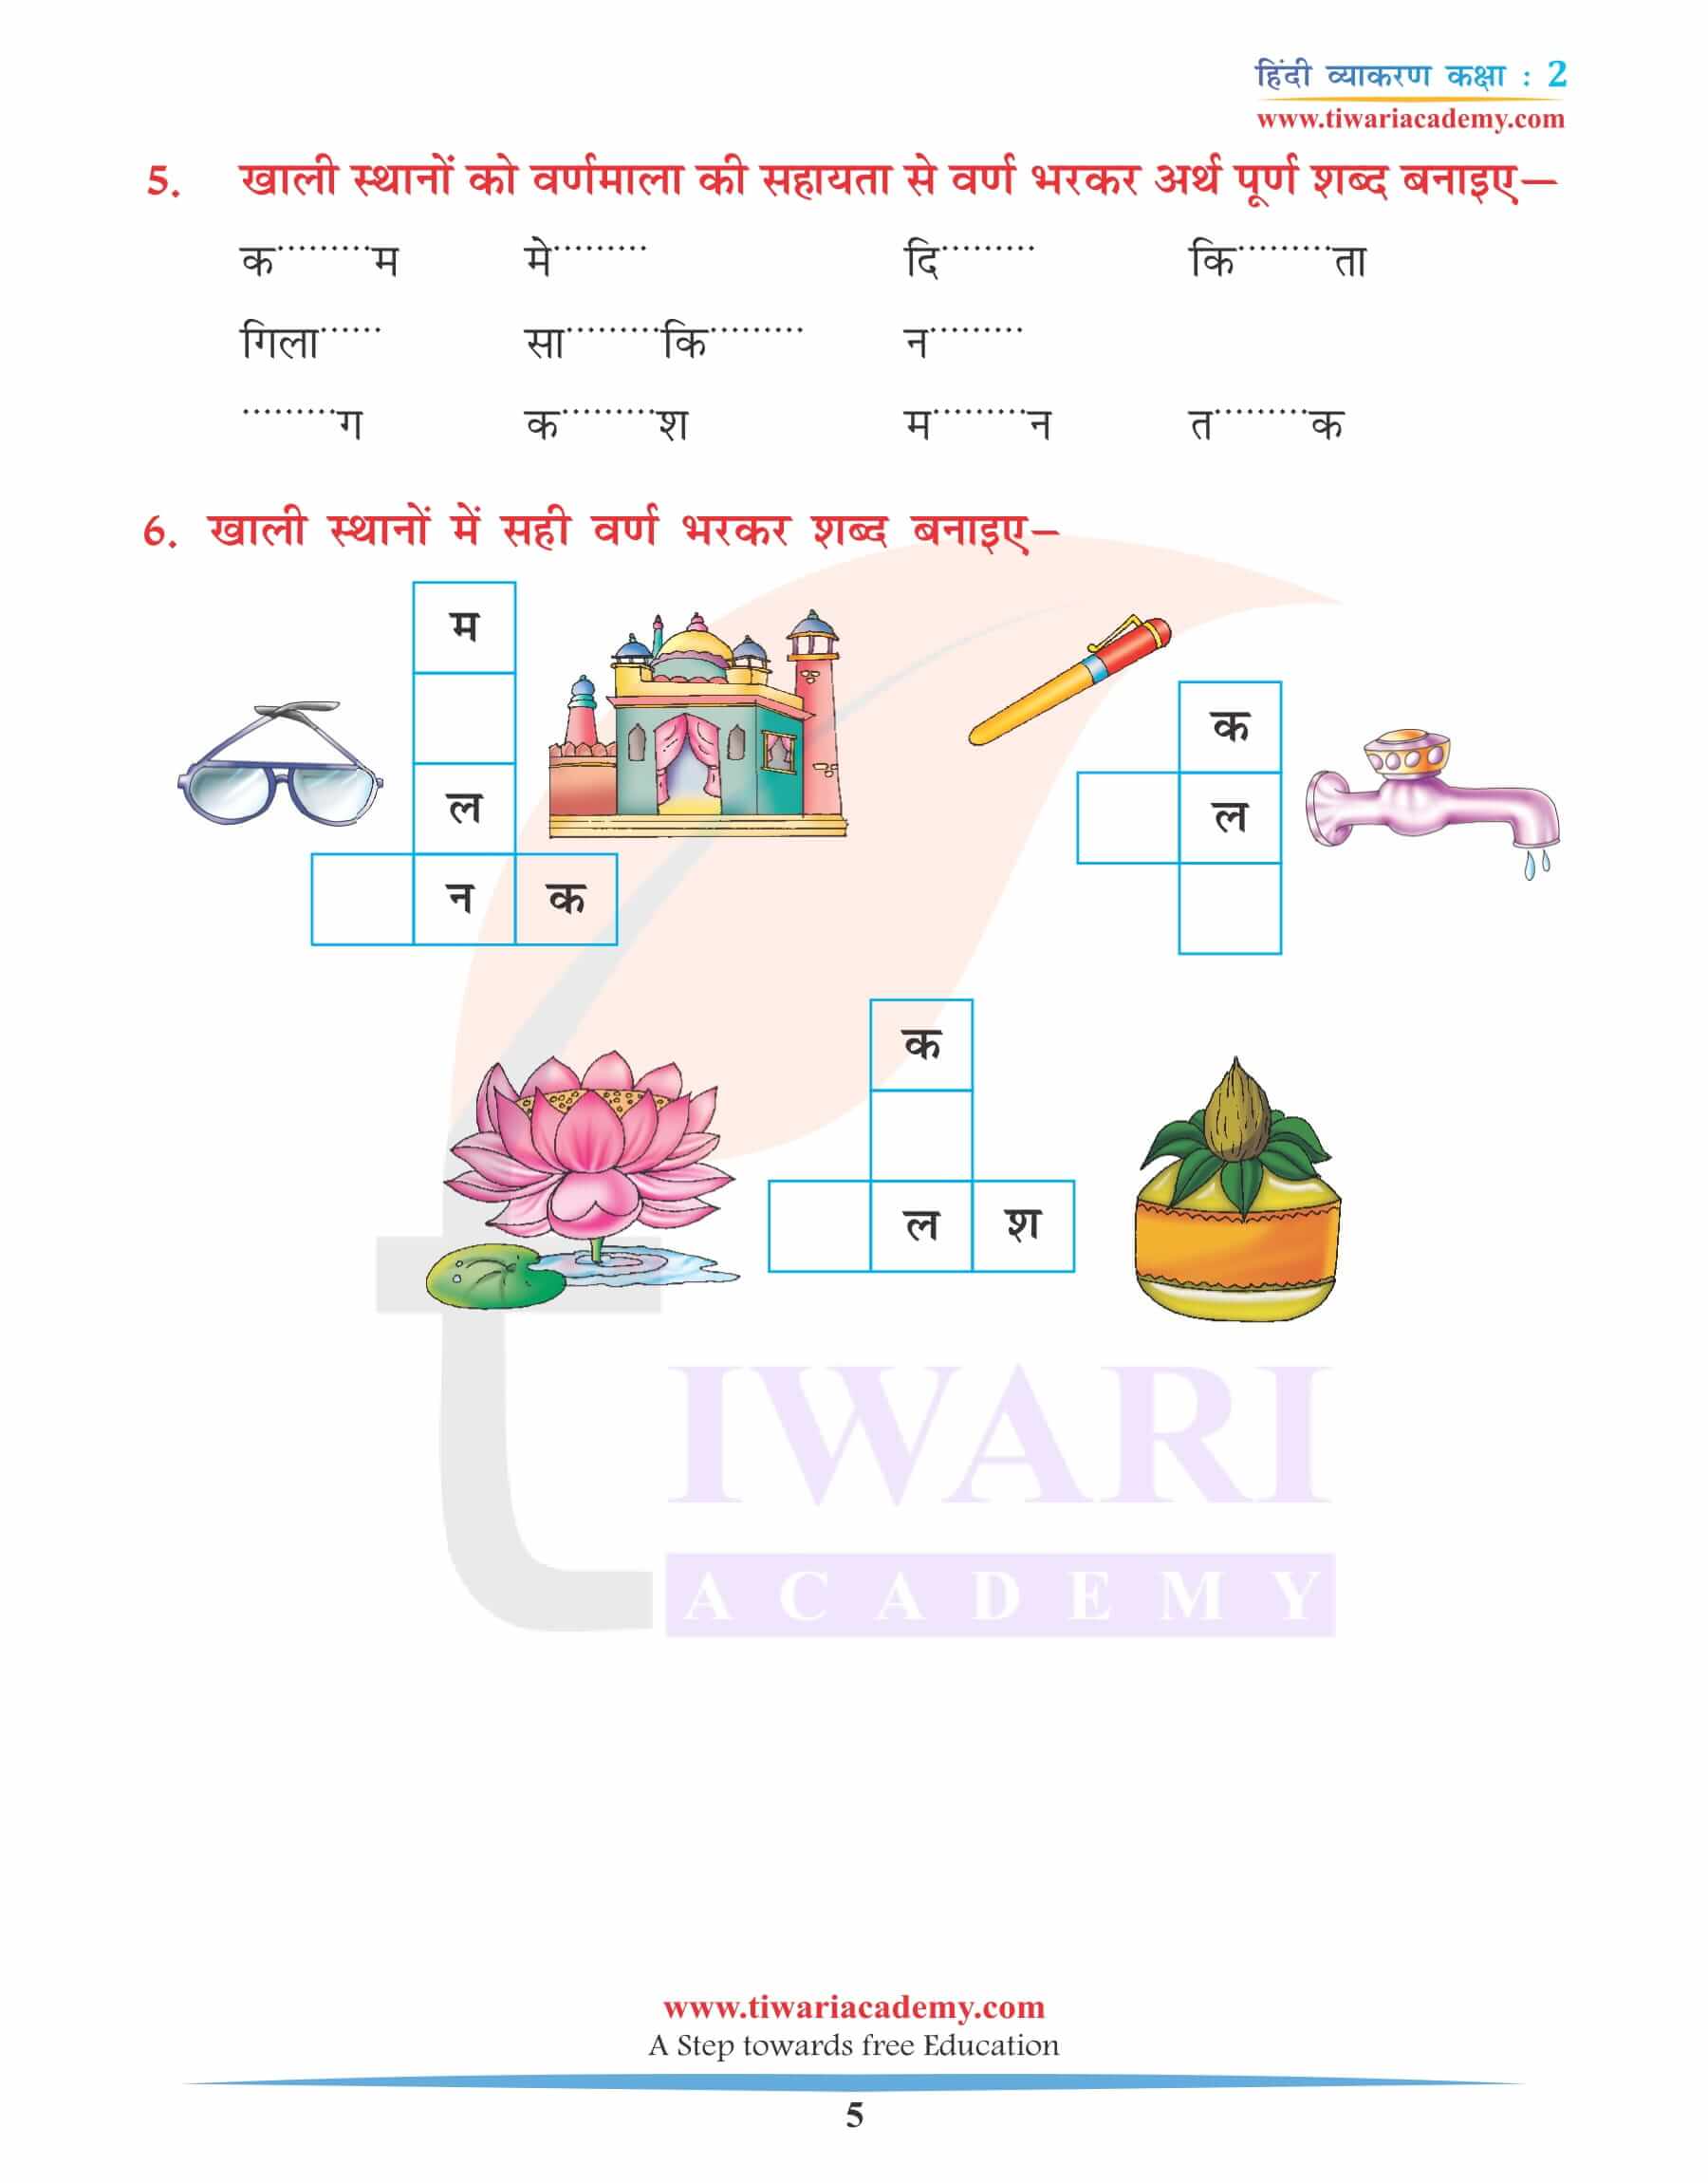 कक्षा 2 के लिए हिंदी व्याकरण अध्याय 2 वर्ण विचार